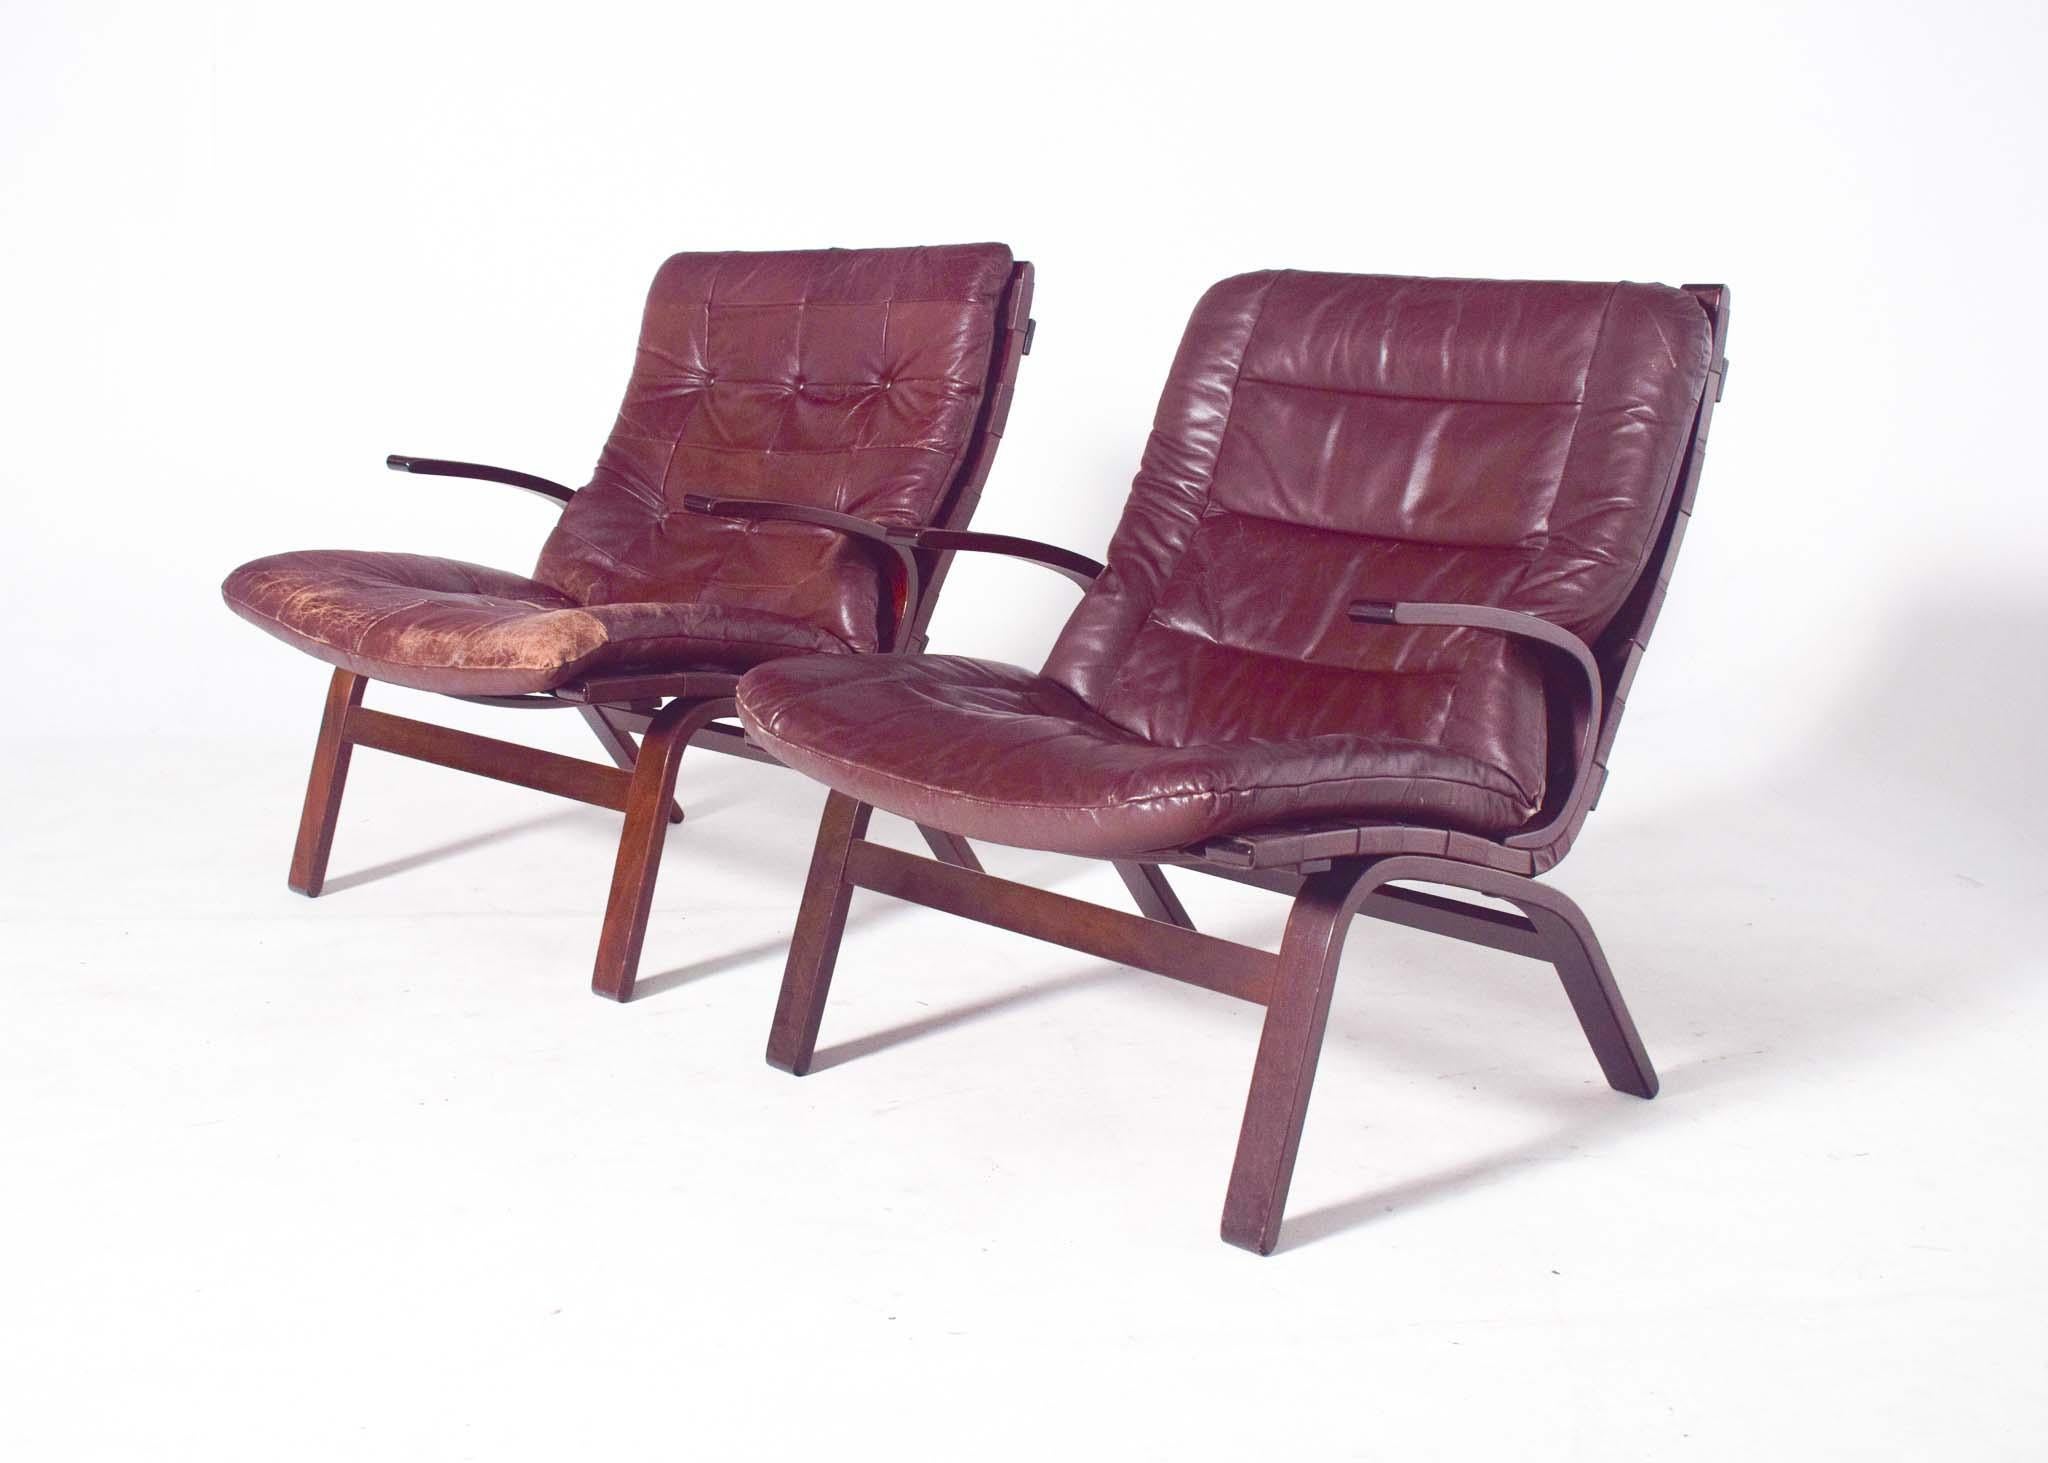 Paire de fauteuils Beeche, coussins en cuir marron sur structure en contreplaqué de hêtre, années 1960. Chaises fantastiques avec structure en bois incurvée avec accoudoirs et assise rembourrée recouverte de cuir marron. Très confortable grâce à sa